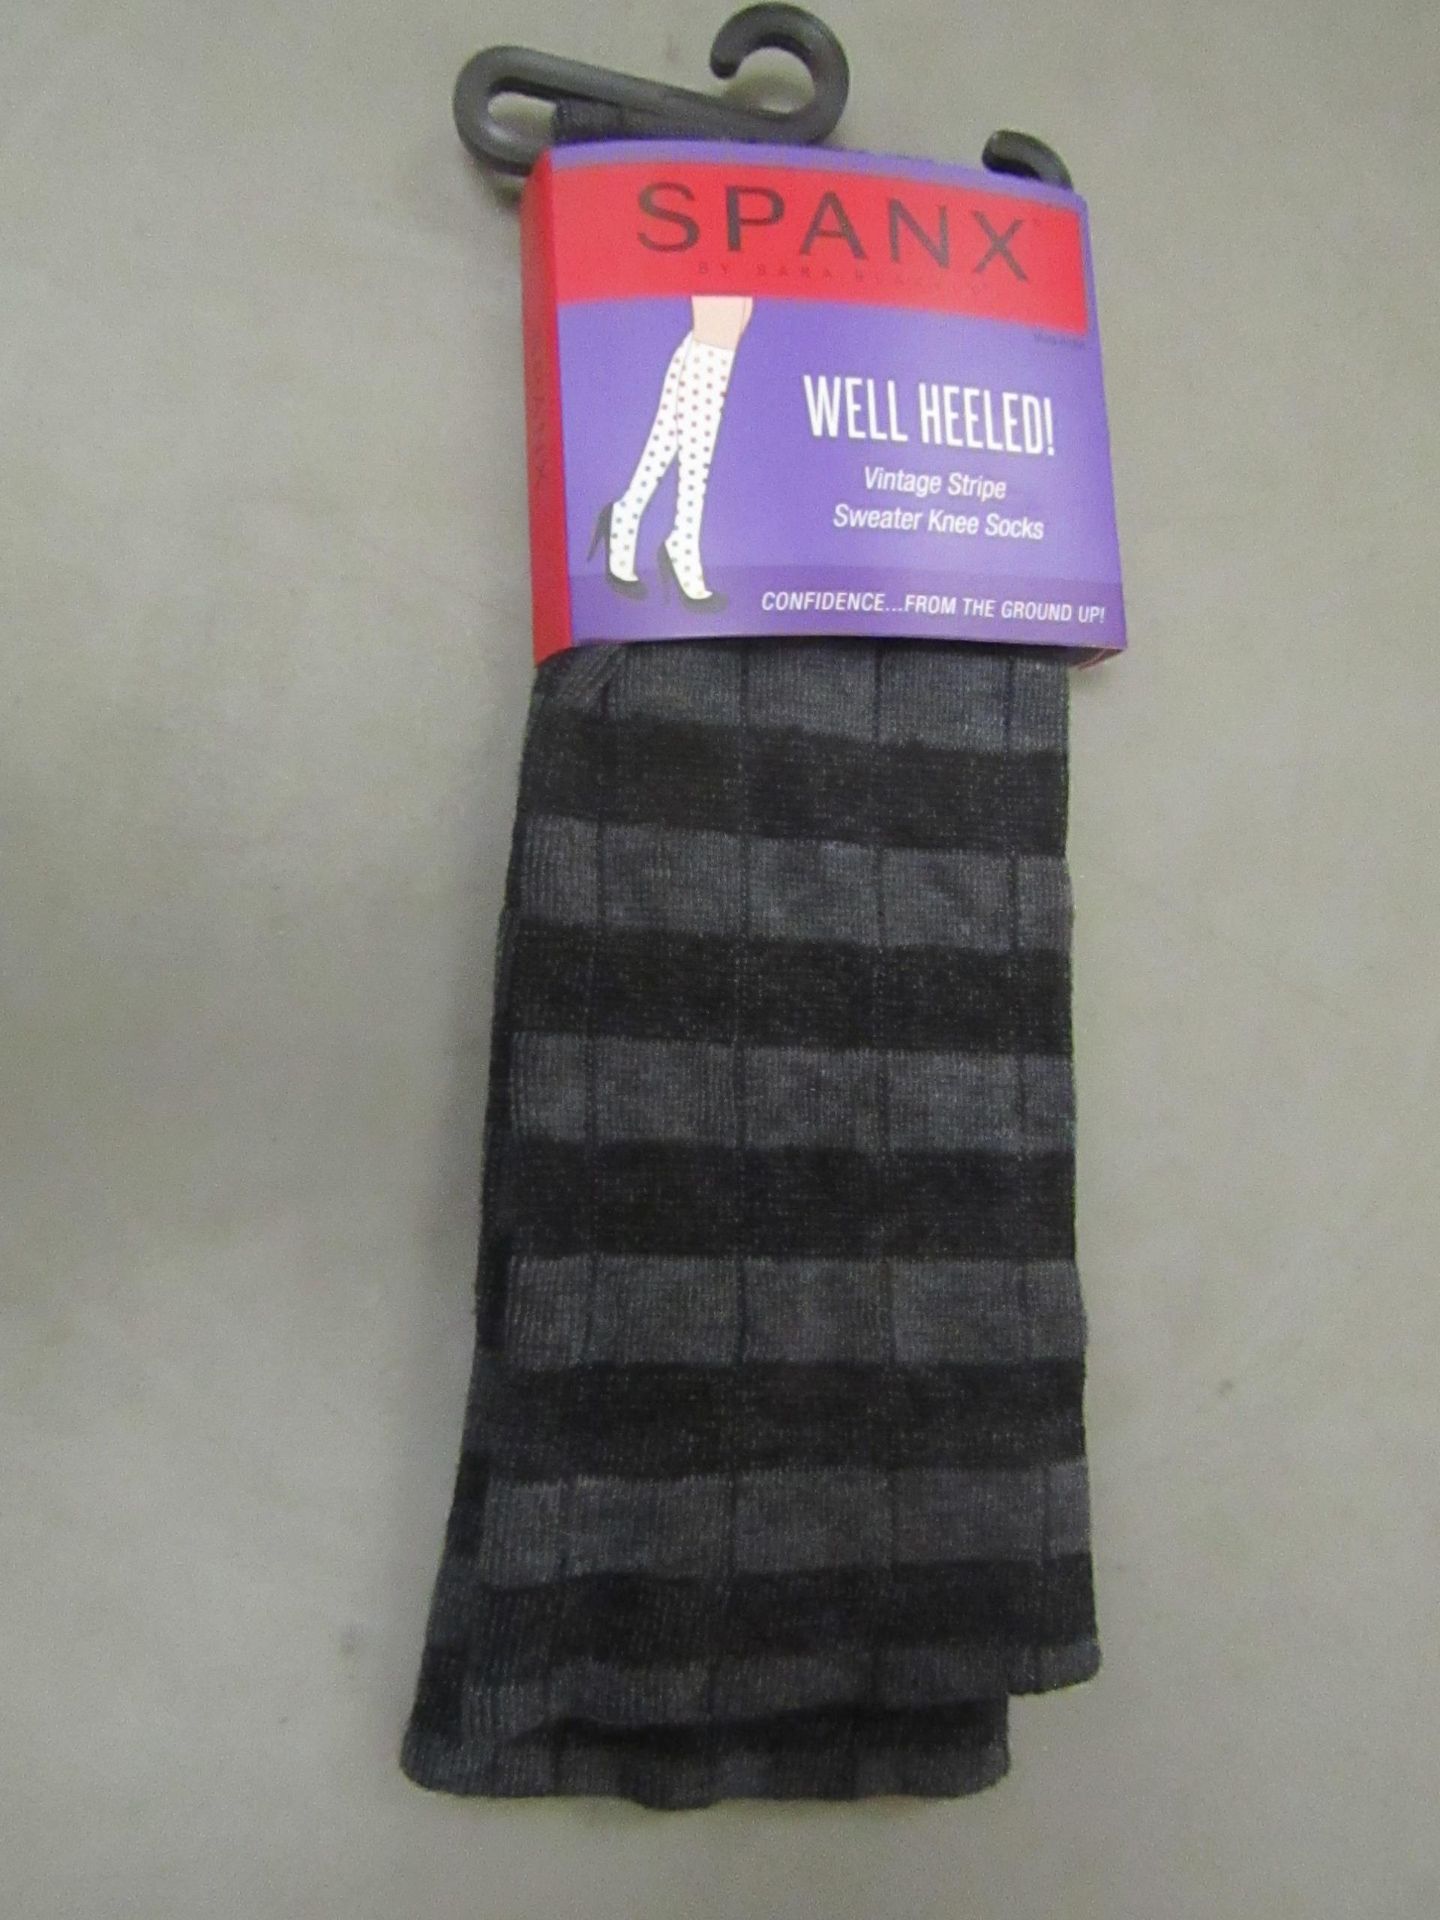 19 X Pairs of Well Heeled Vintage Stripe Knee Socks Grey/Black Reg New & Packaged